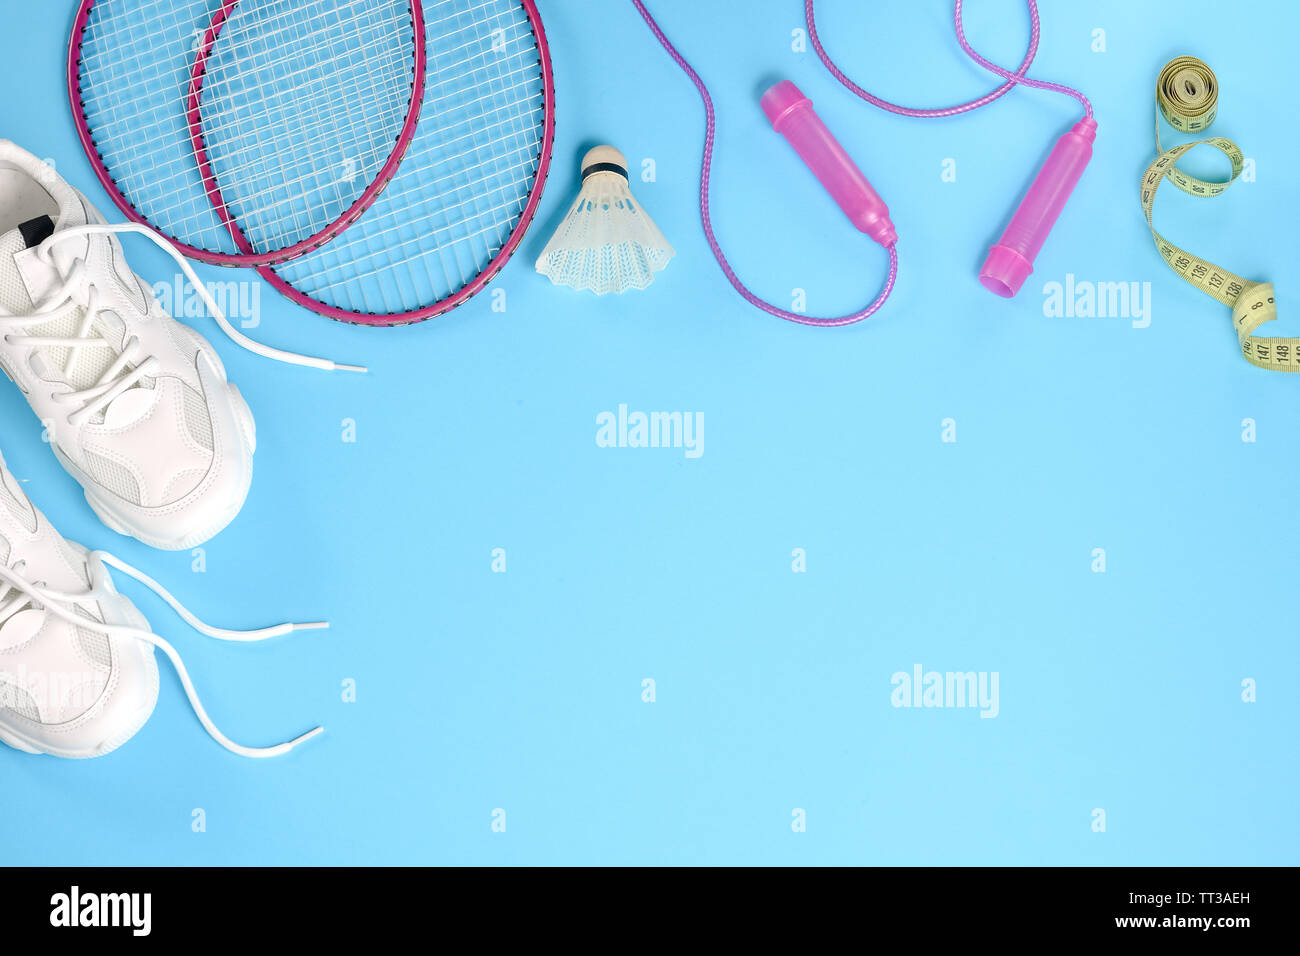 Deportes shuttlecock plana con laicos y badminton raqueta, comba, zapatillas y cinta métrica sobre fondo azul. Fitness, deporte y vida sana Foto de stock